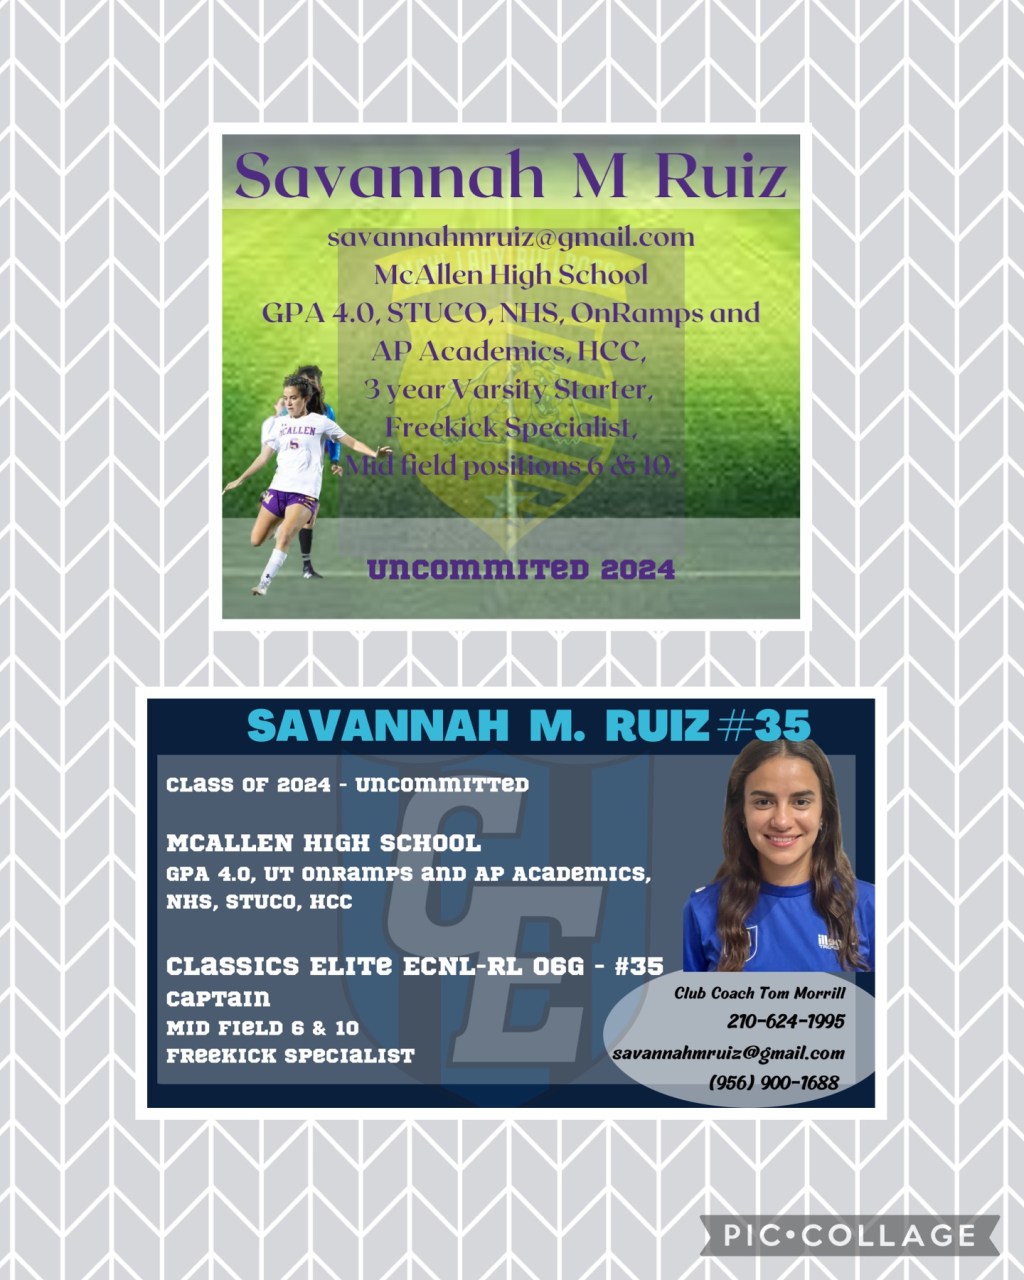 Savannah M. Ruiz